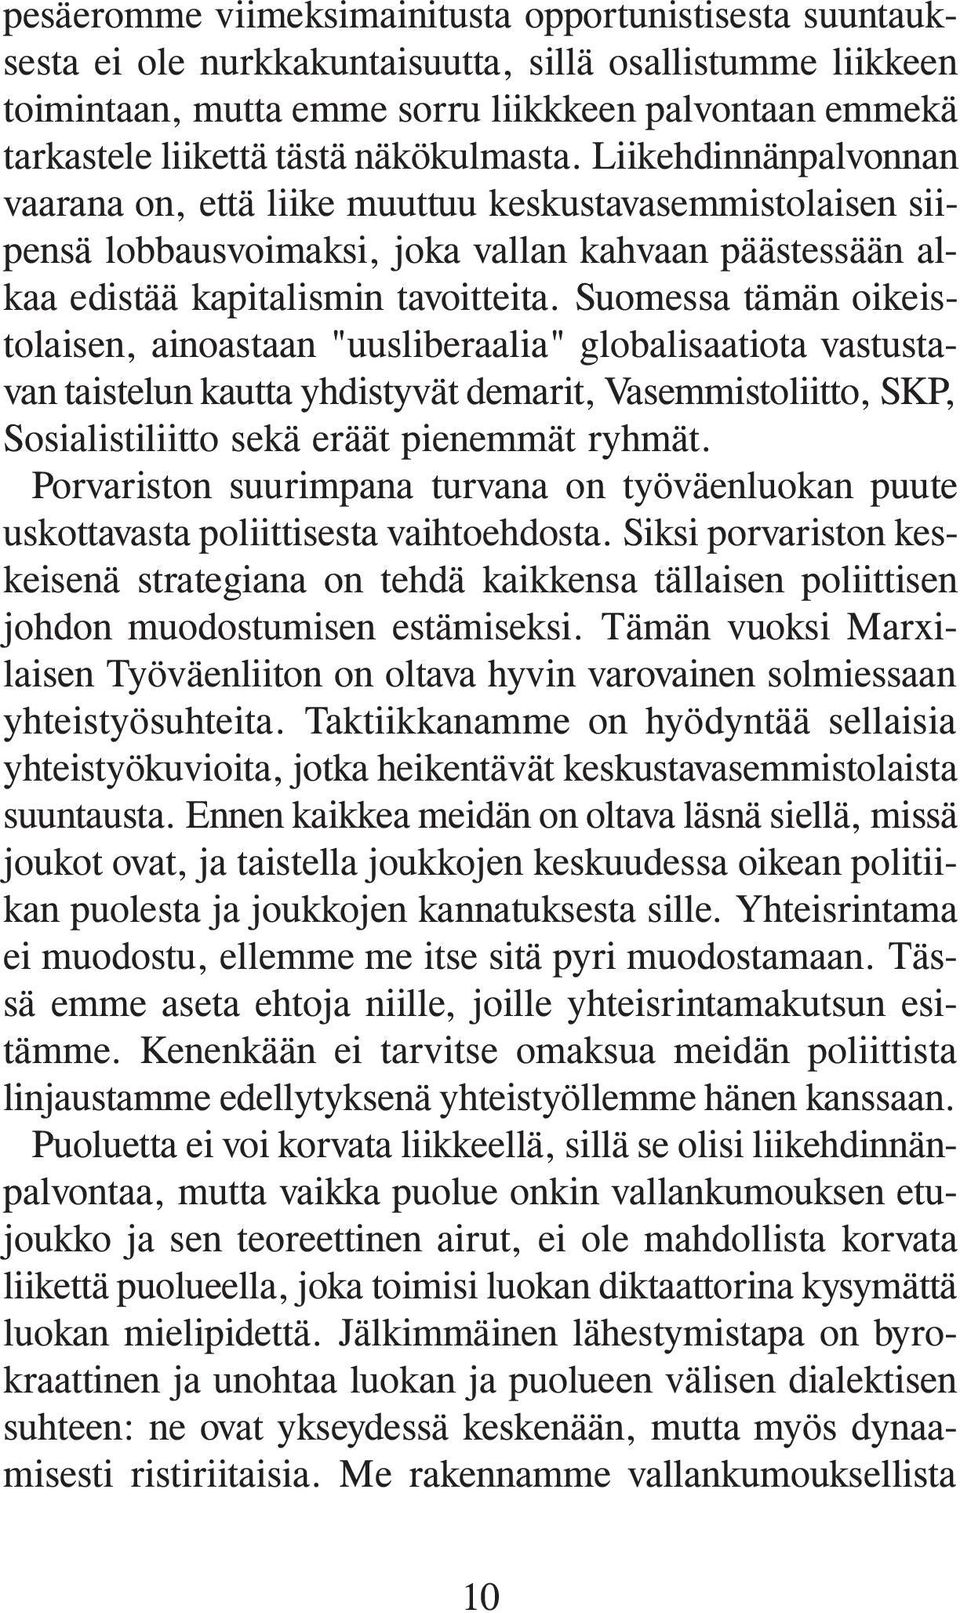 Suomessa tämän oikeistolaisen, ainoastaan "uusliberaalia" globalisaatiota vastustavan taistelun kautta yhdistyvät demarit, Vasemmistoliitto, SKP, Sosialistiliitto sekä eräät pienemmät ryhmät.